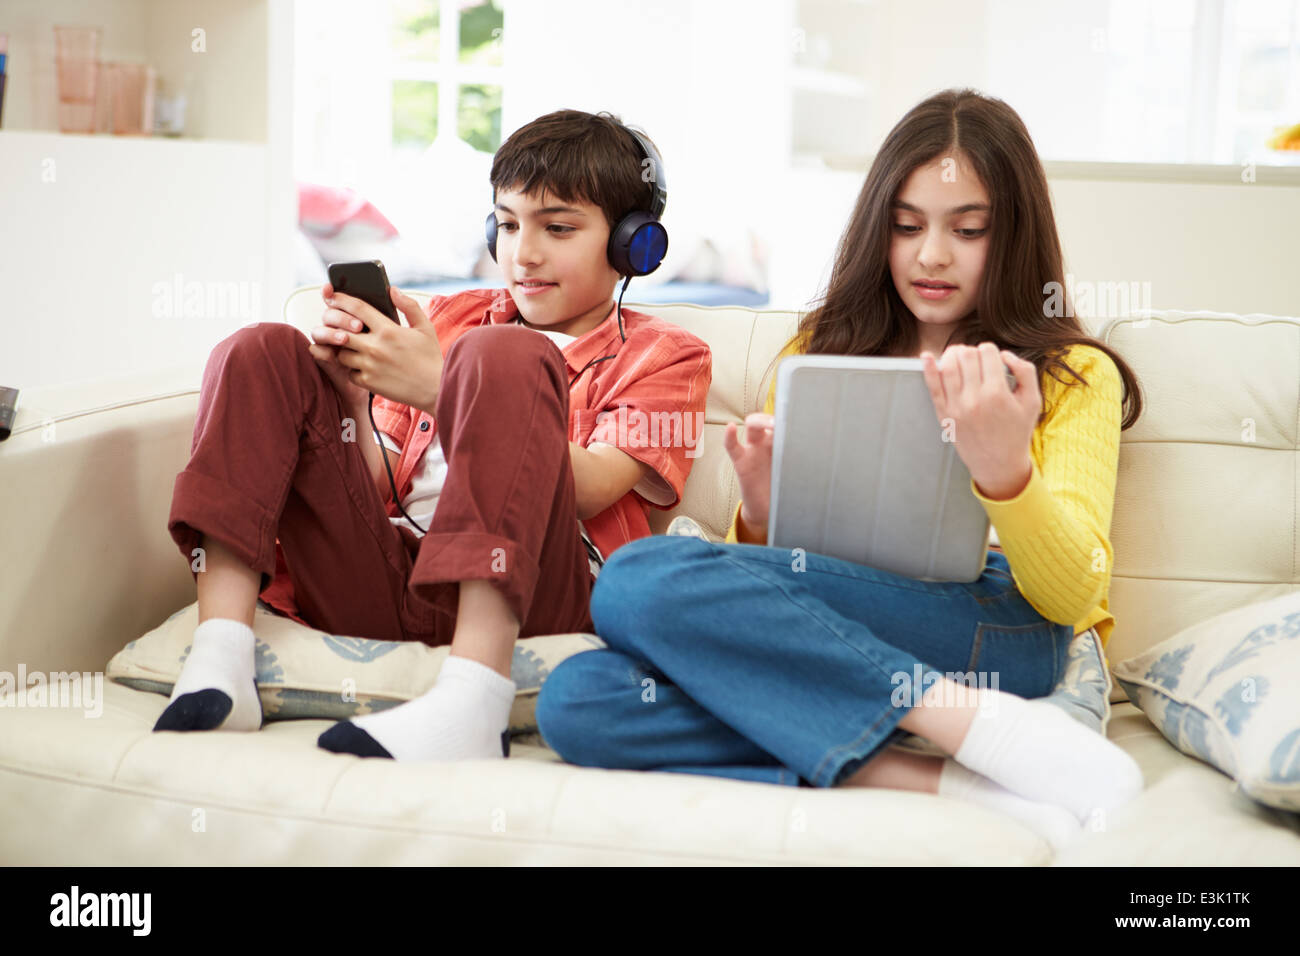 Niños jugando con la tableta digital y reproductor de MP3 Foto de stock